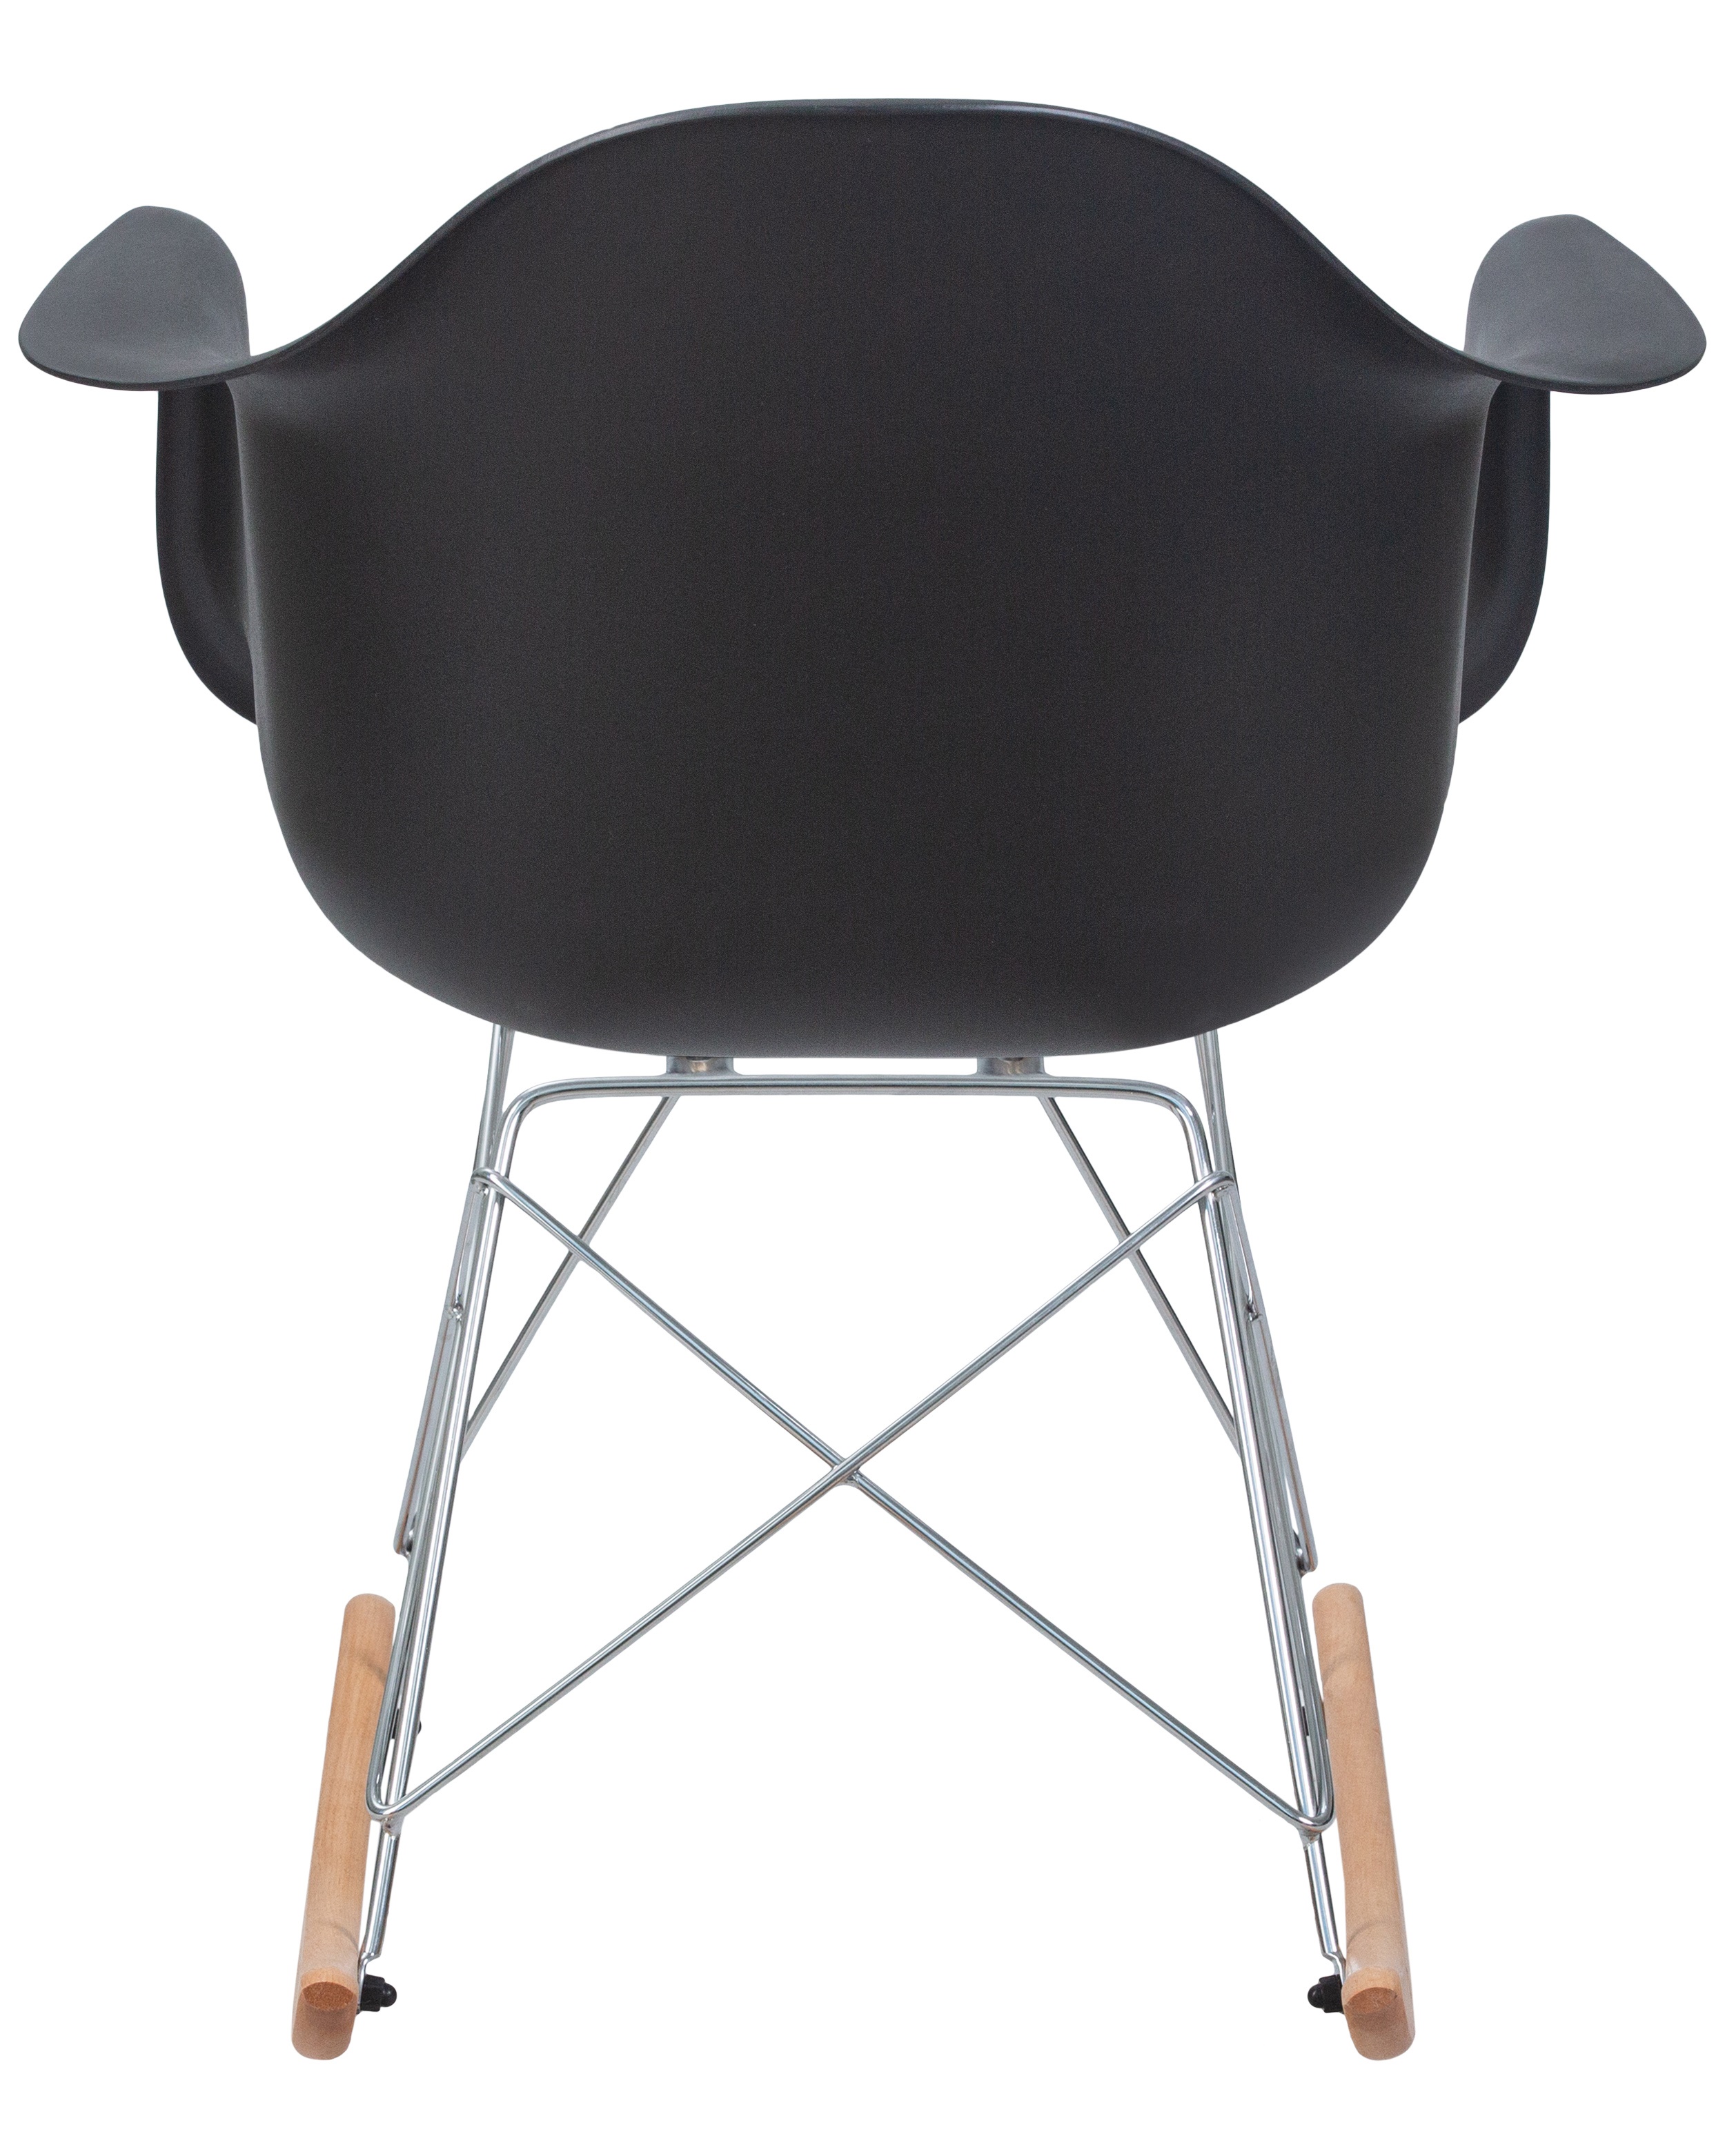 Кресло-качалка DOBRIN DAW ROCK (цвет черный)